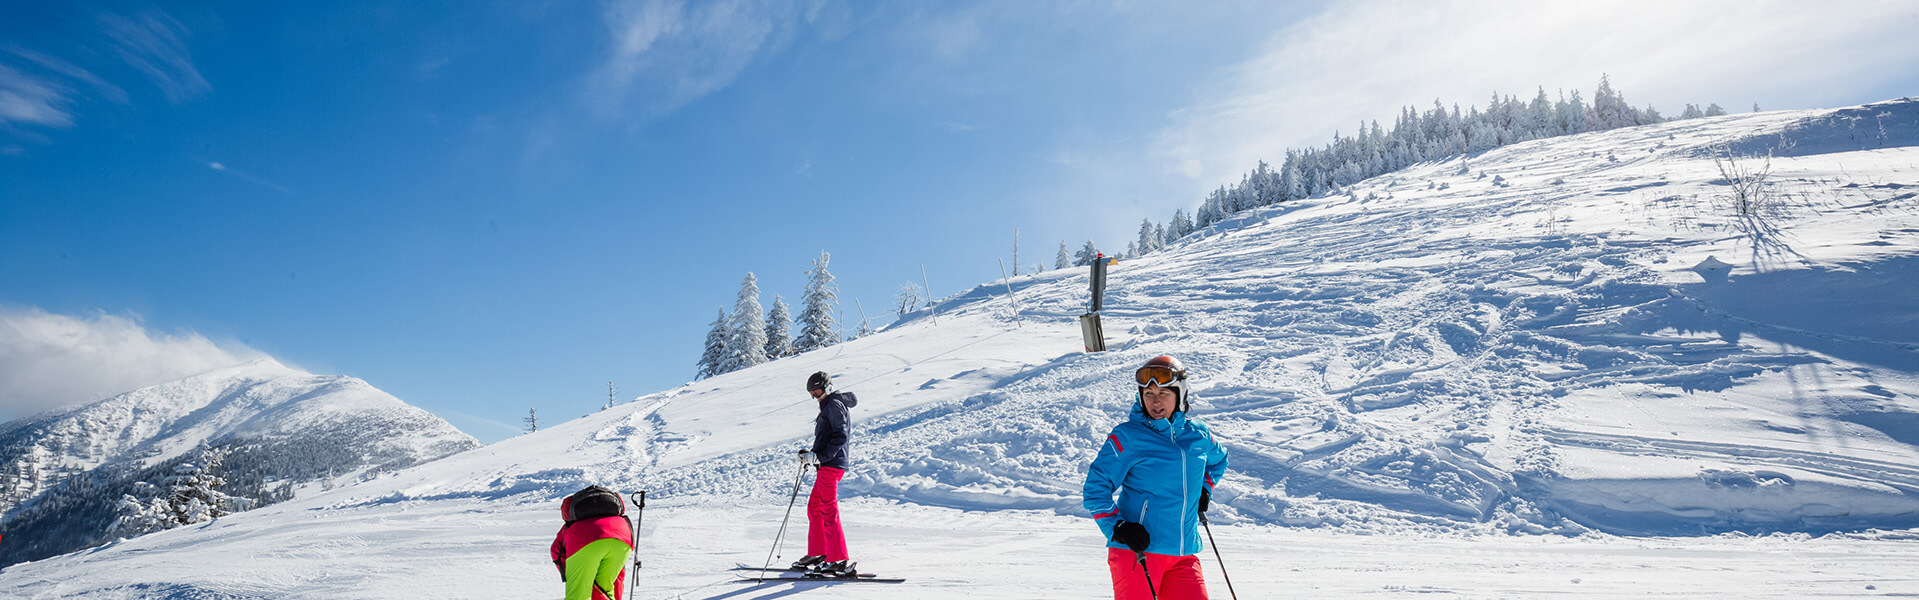 All inclusive - Skitag Lackenhof am Ötscher